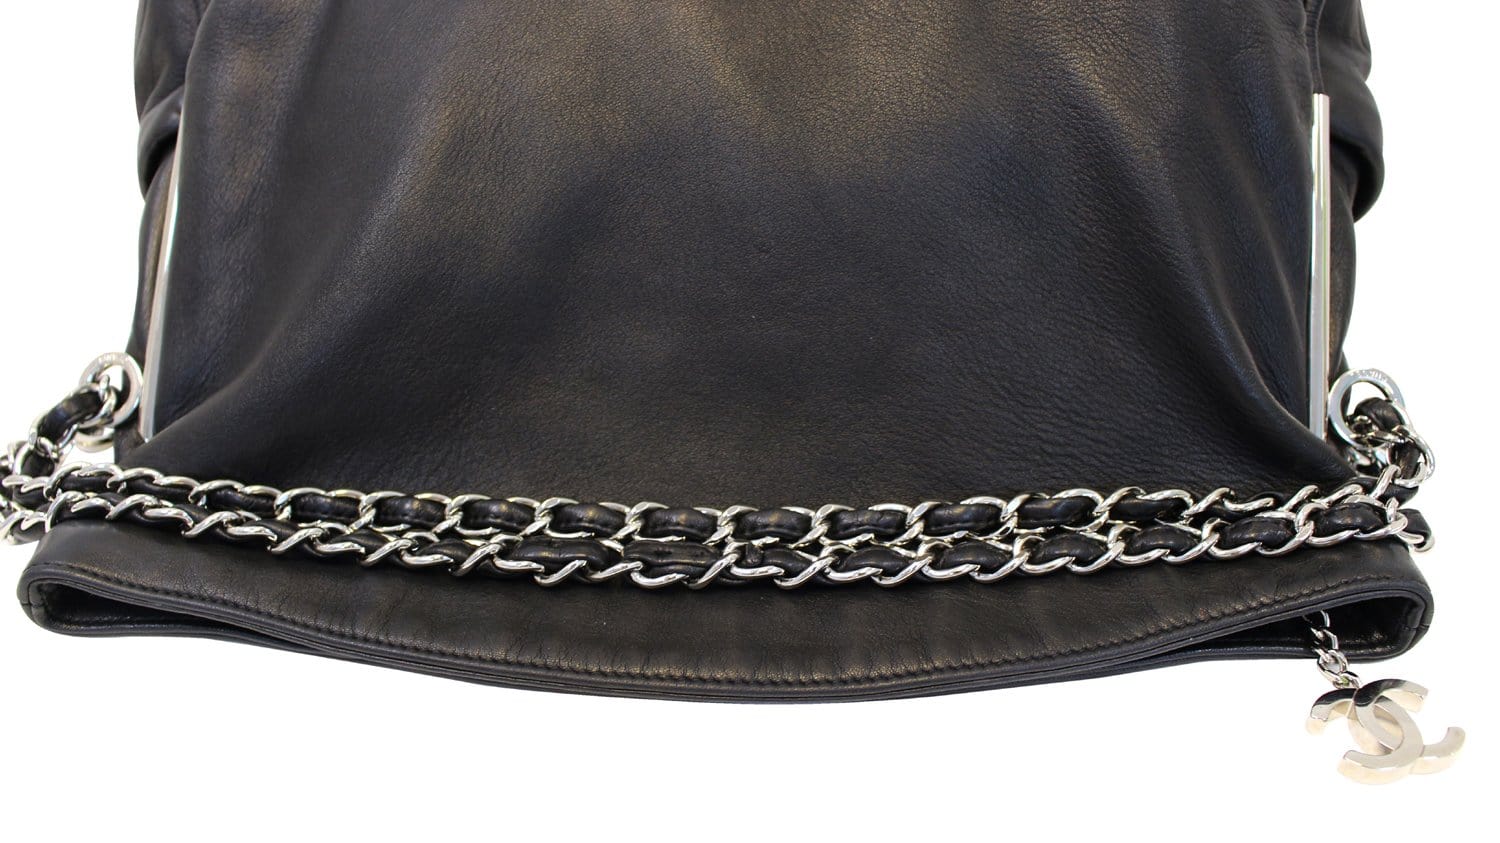 CHANEL Black Lambskin Leather Strap Shoulder Bag - Chelsea Vintage